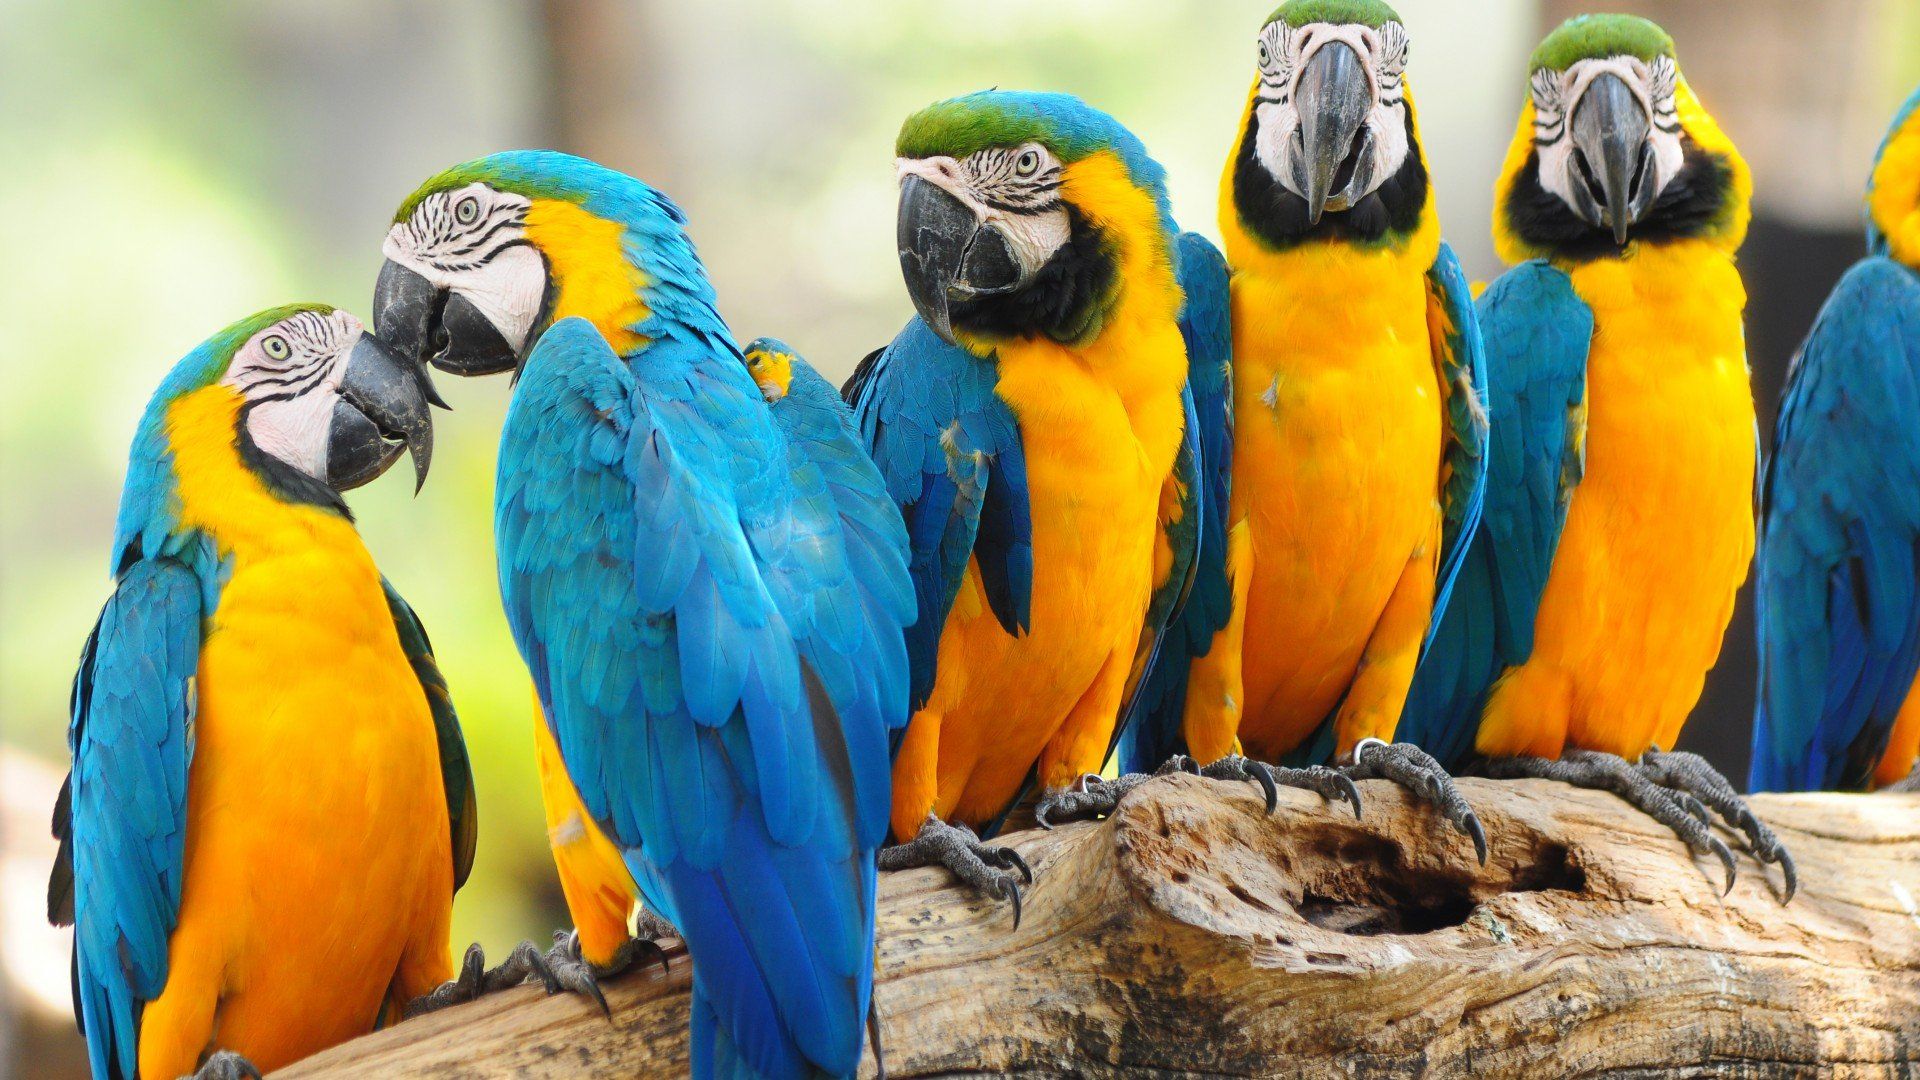 Pictures On The Desktop Parrots